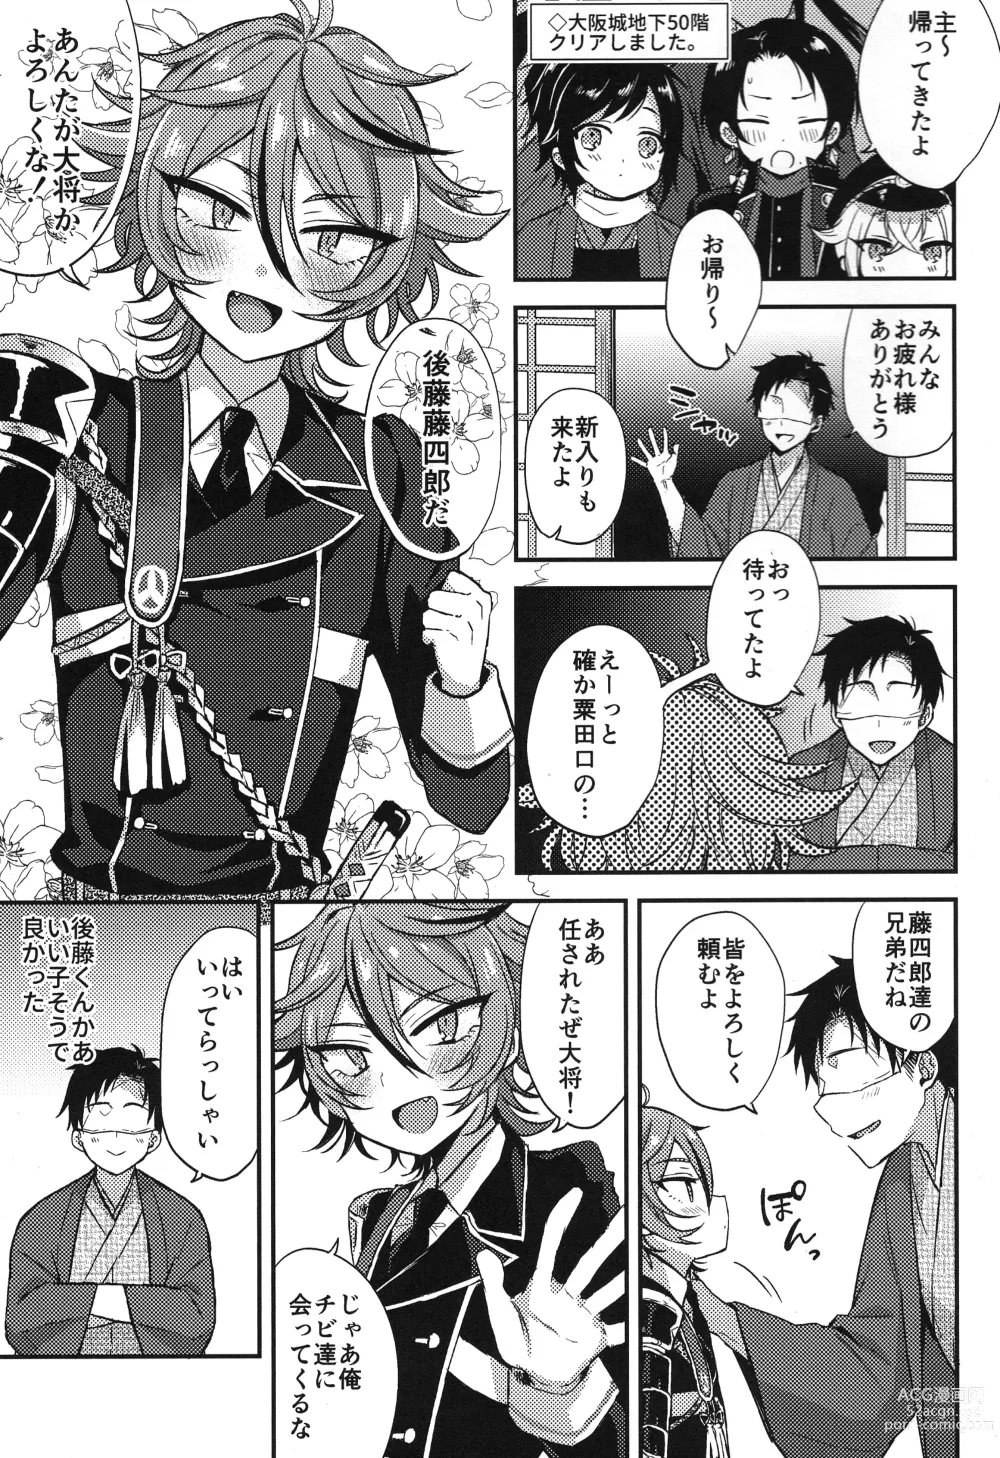 Page 6 of doujinshi Sanigoto Sairoku!